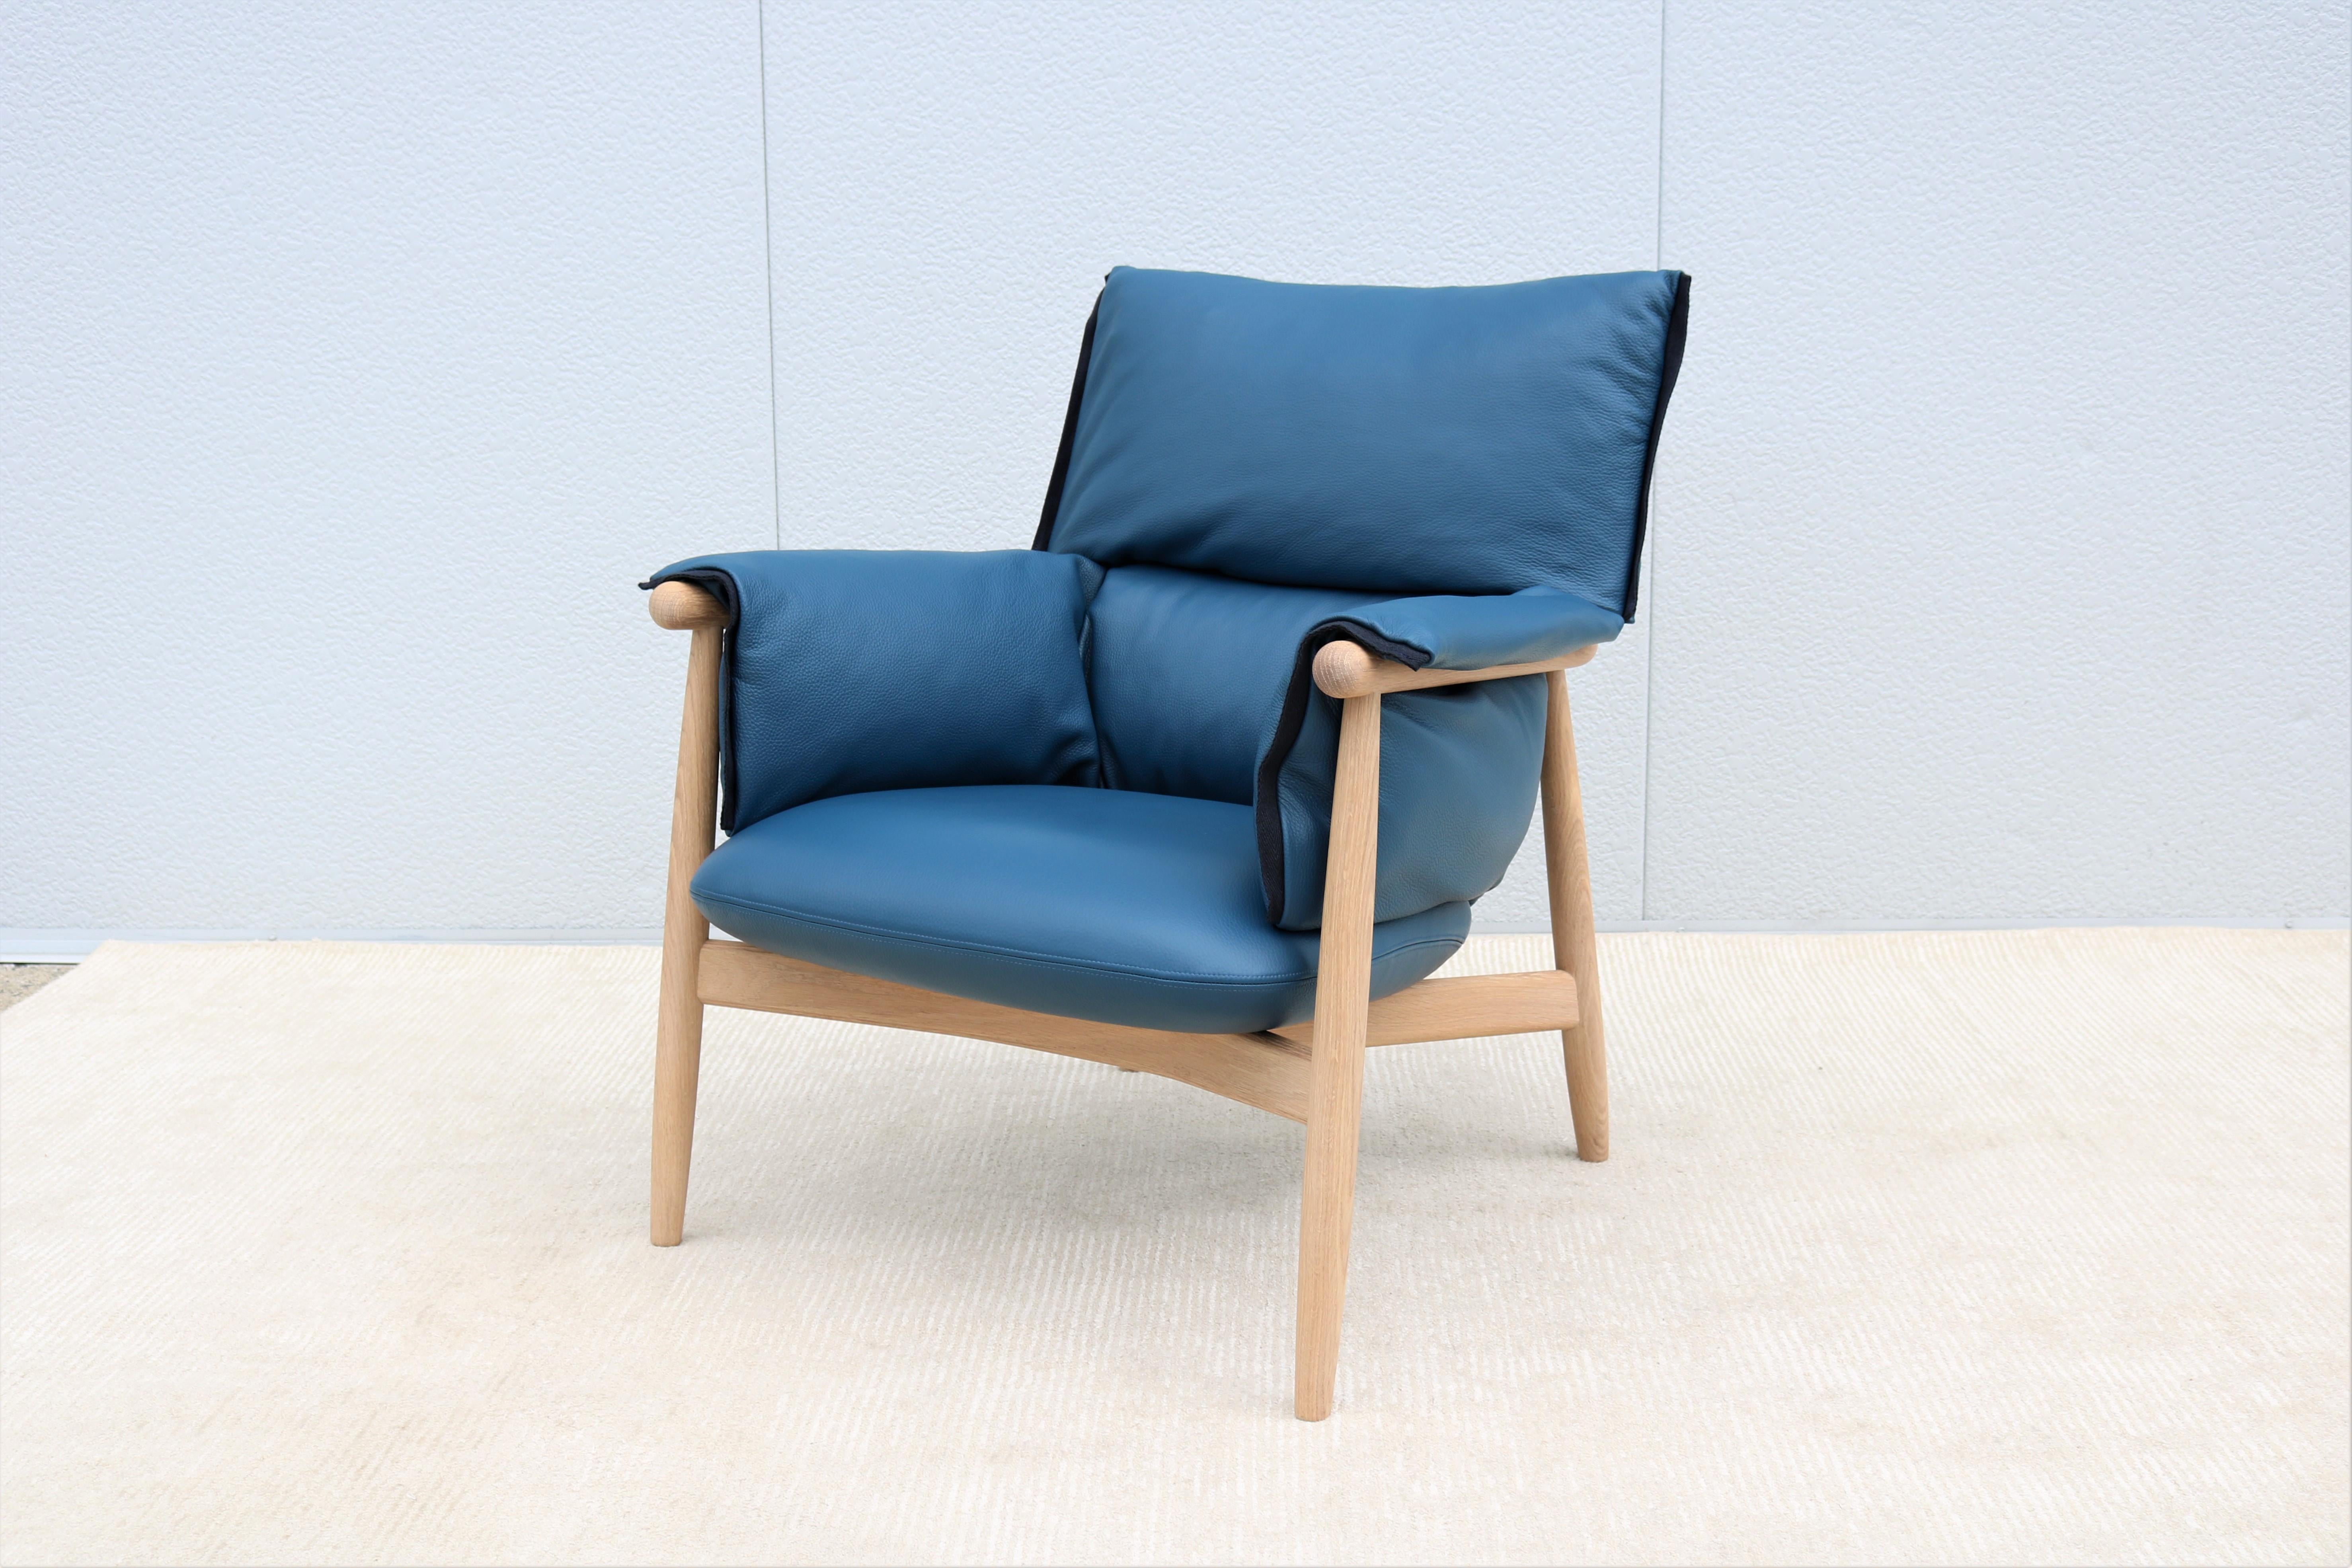 L'élégante chaise longue E015 Embrace a été conçue par EOOS pour Carl Hansen & Son en 2016, afin d'offrir un confort et une détente supérieurs.
Le Design/One se compose d'une structure en bois visible en continu, avec un dossier arrondi en trois